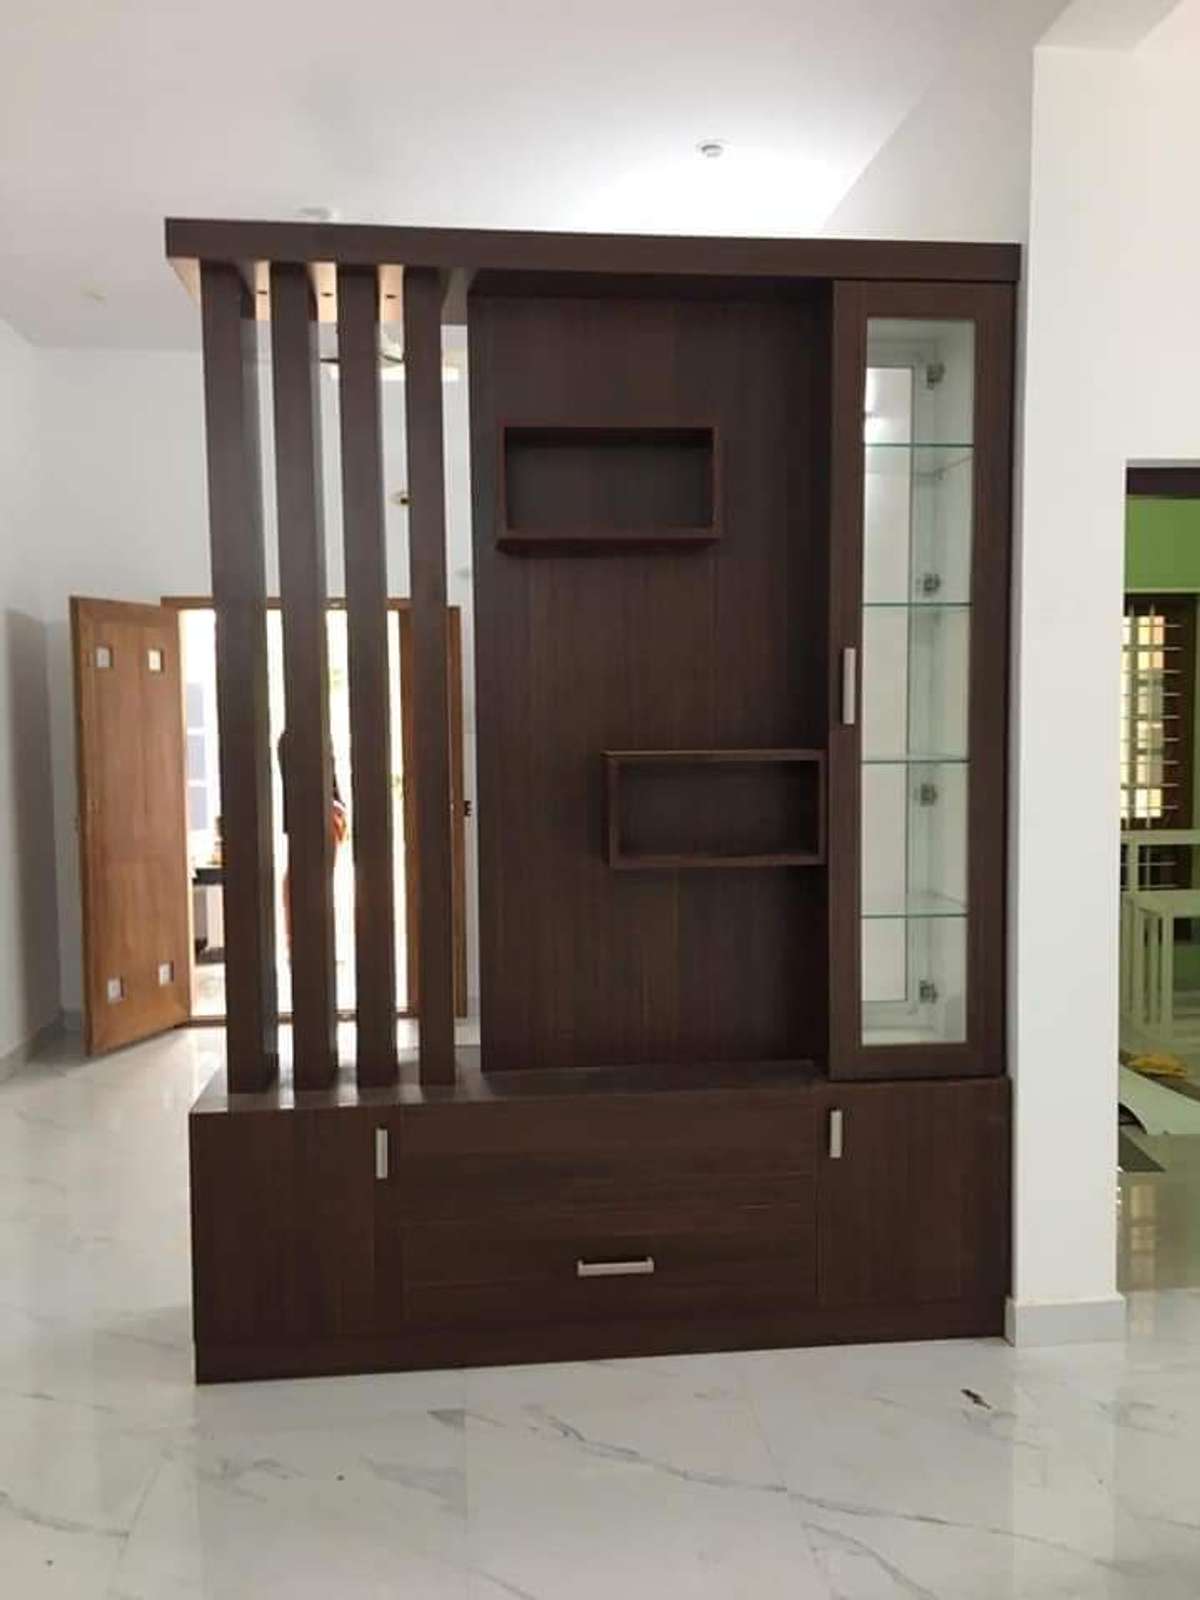 Living, Storage Designs by Carpenter Kerala Carpenters All Kerala work, Ernakulam | Kolo